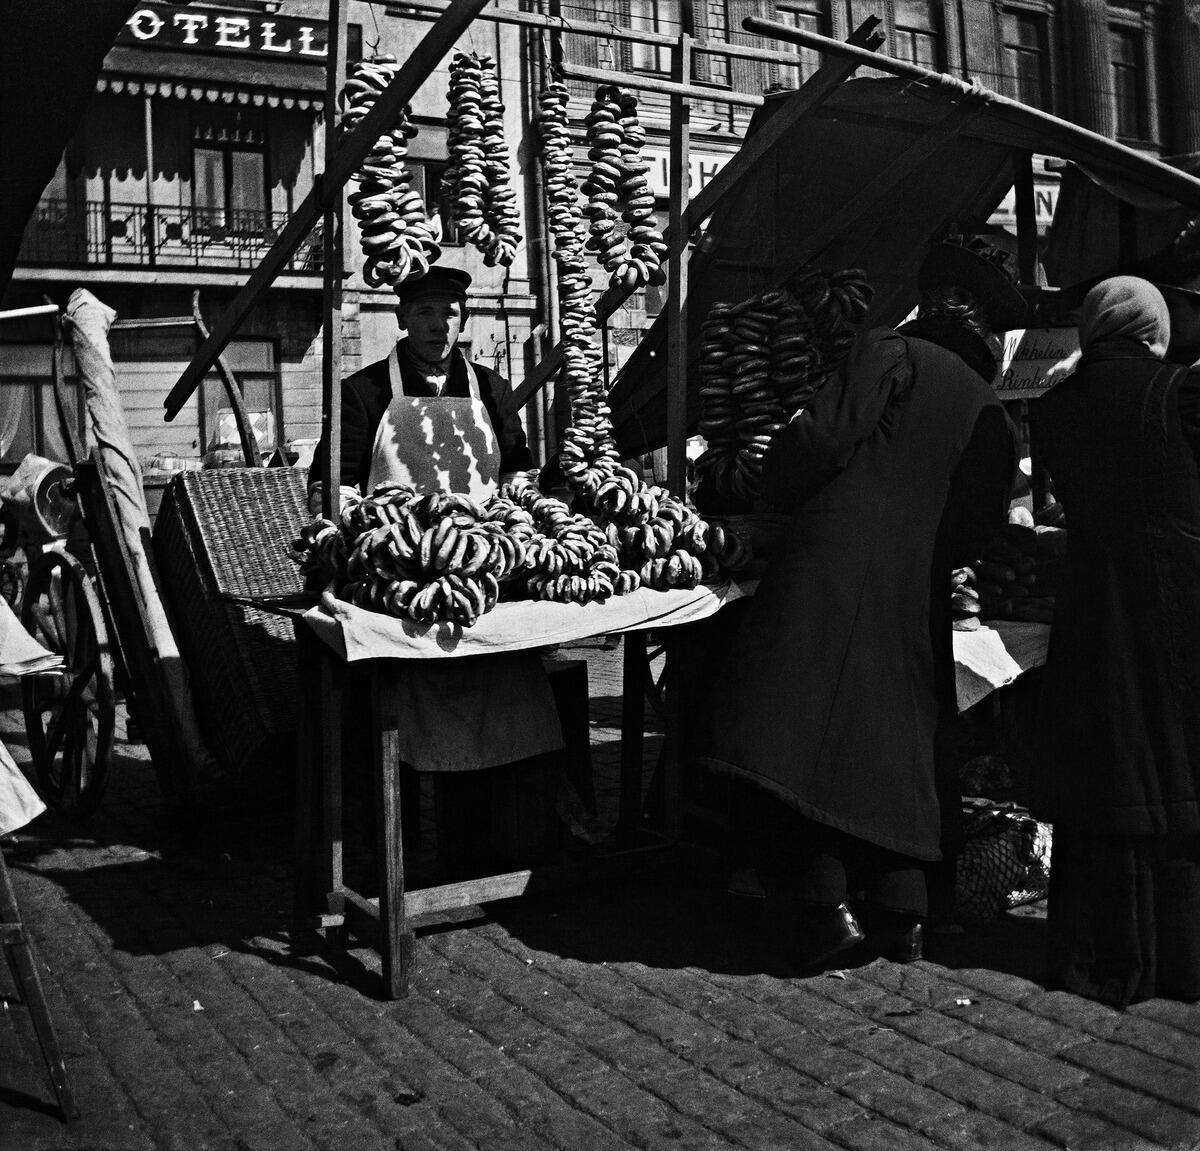 Rinkelikauppias myyntikojussaan vuonna 1919. Kuvaaja: Helsingin kaupunginmuseo / Ivan Timiriasew